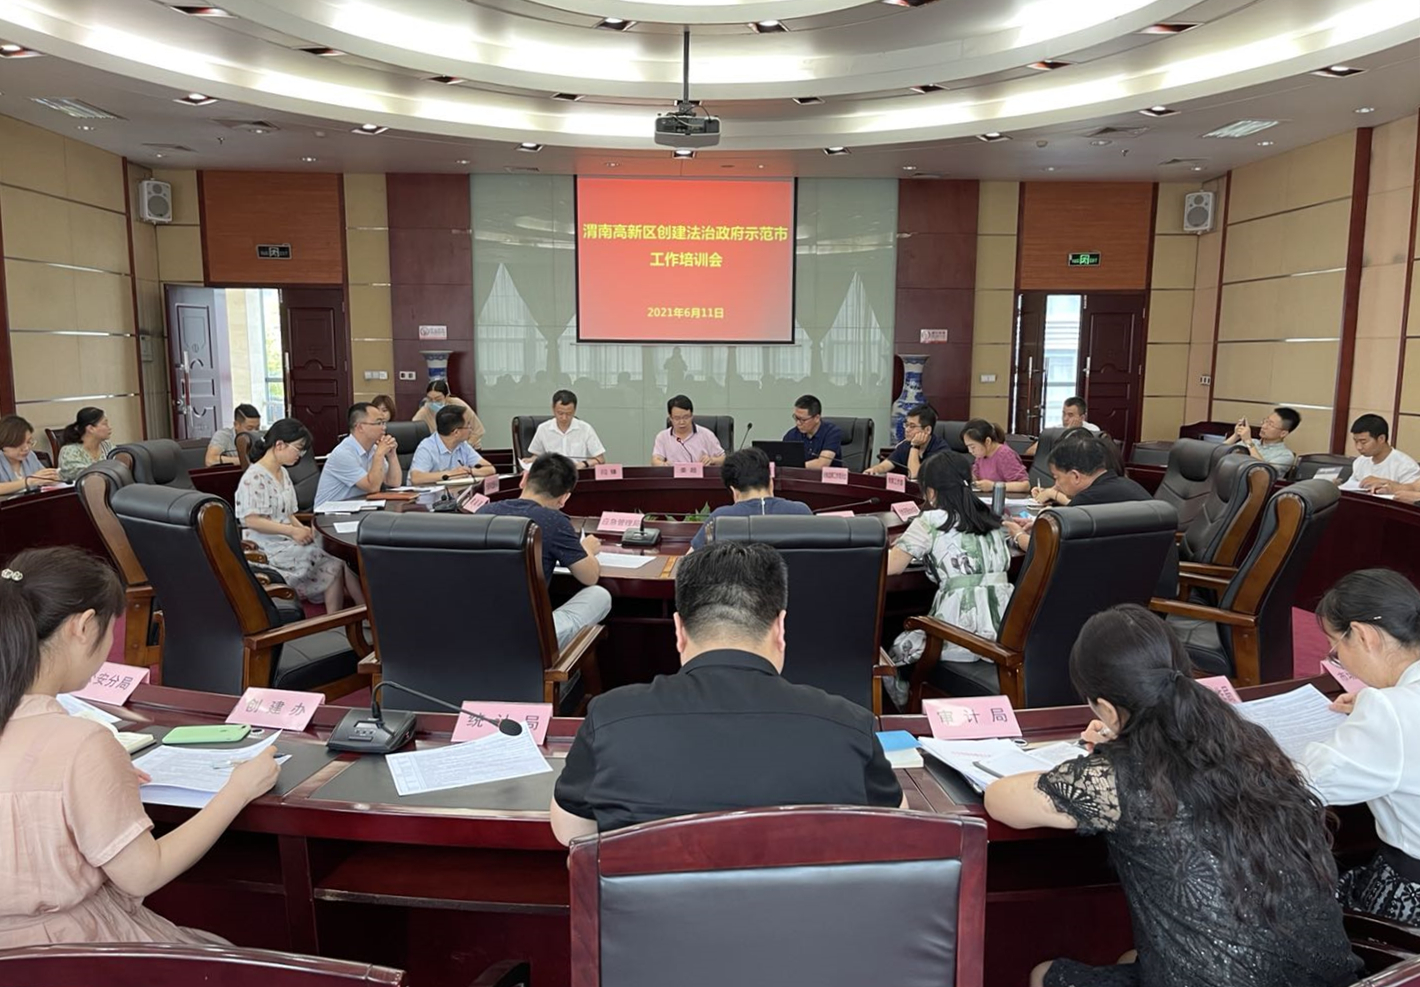 渭南高新区组织召开创建全国法治政府建设示范市工作培训会